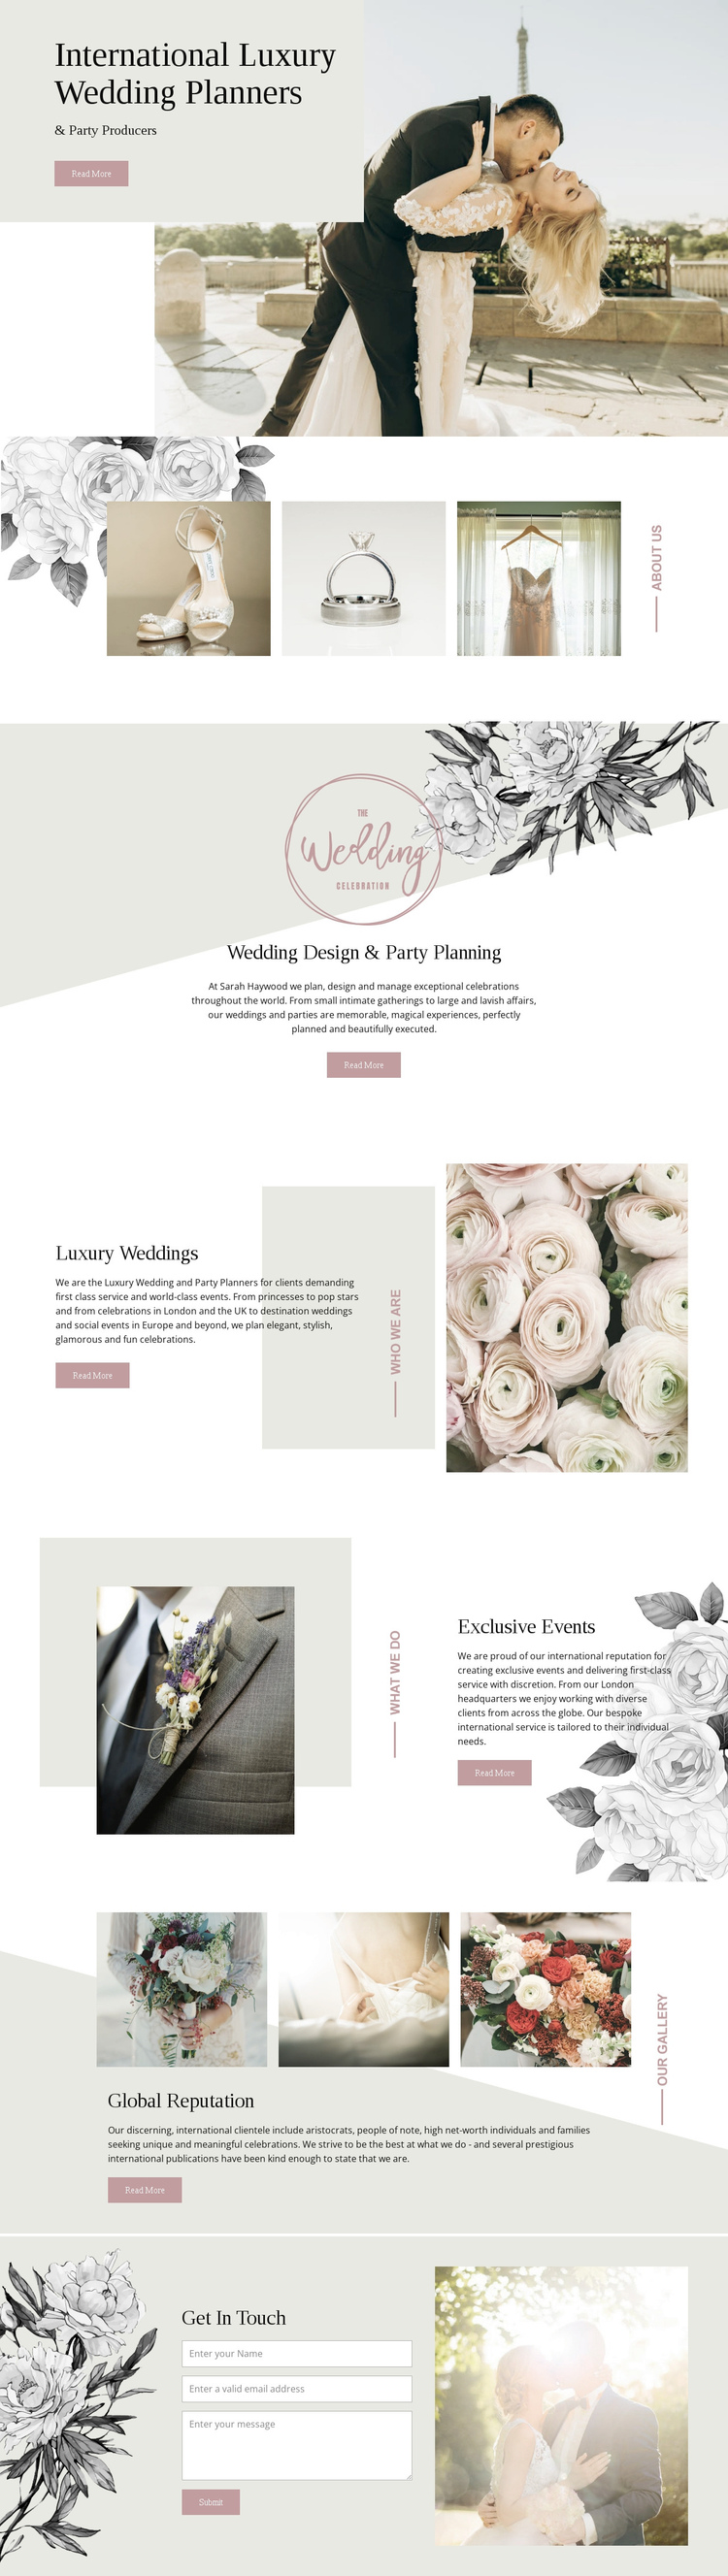 Planners of luxury wedding Website Builder Software